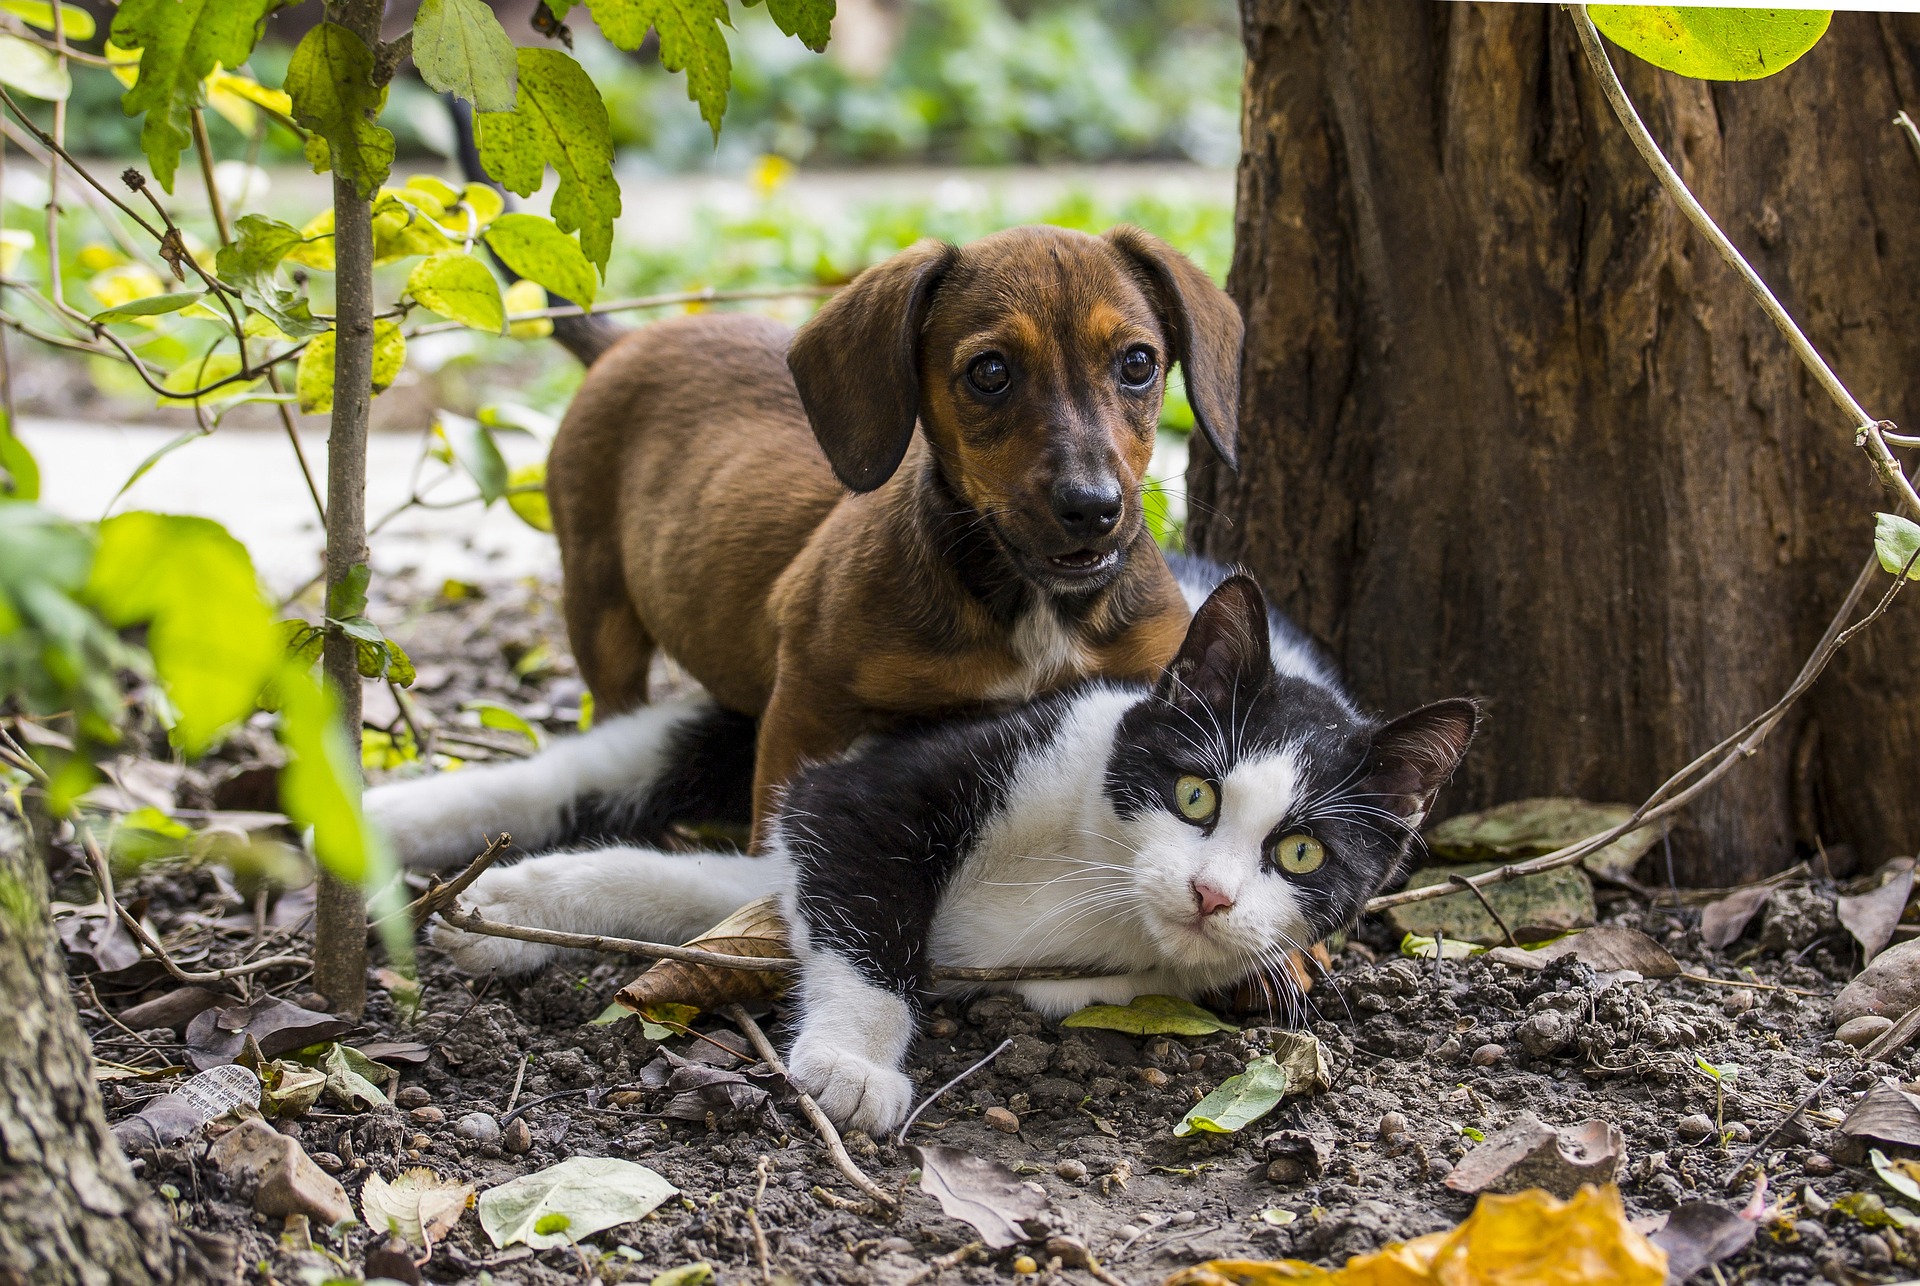 Serão acolhidos cães e gatos (machos e fêmeas) em boas condições de saúde dos 5 meses até 7 anos de idade (Foto: Ilona Ilyés / Pixabay)